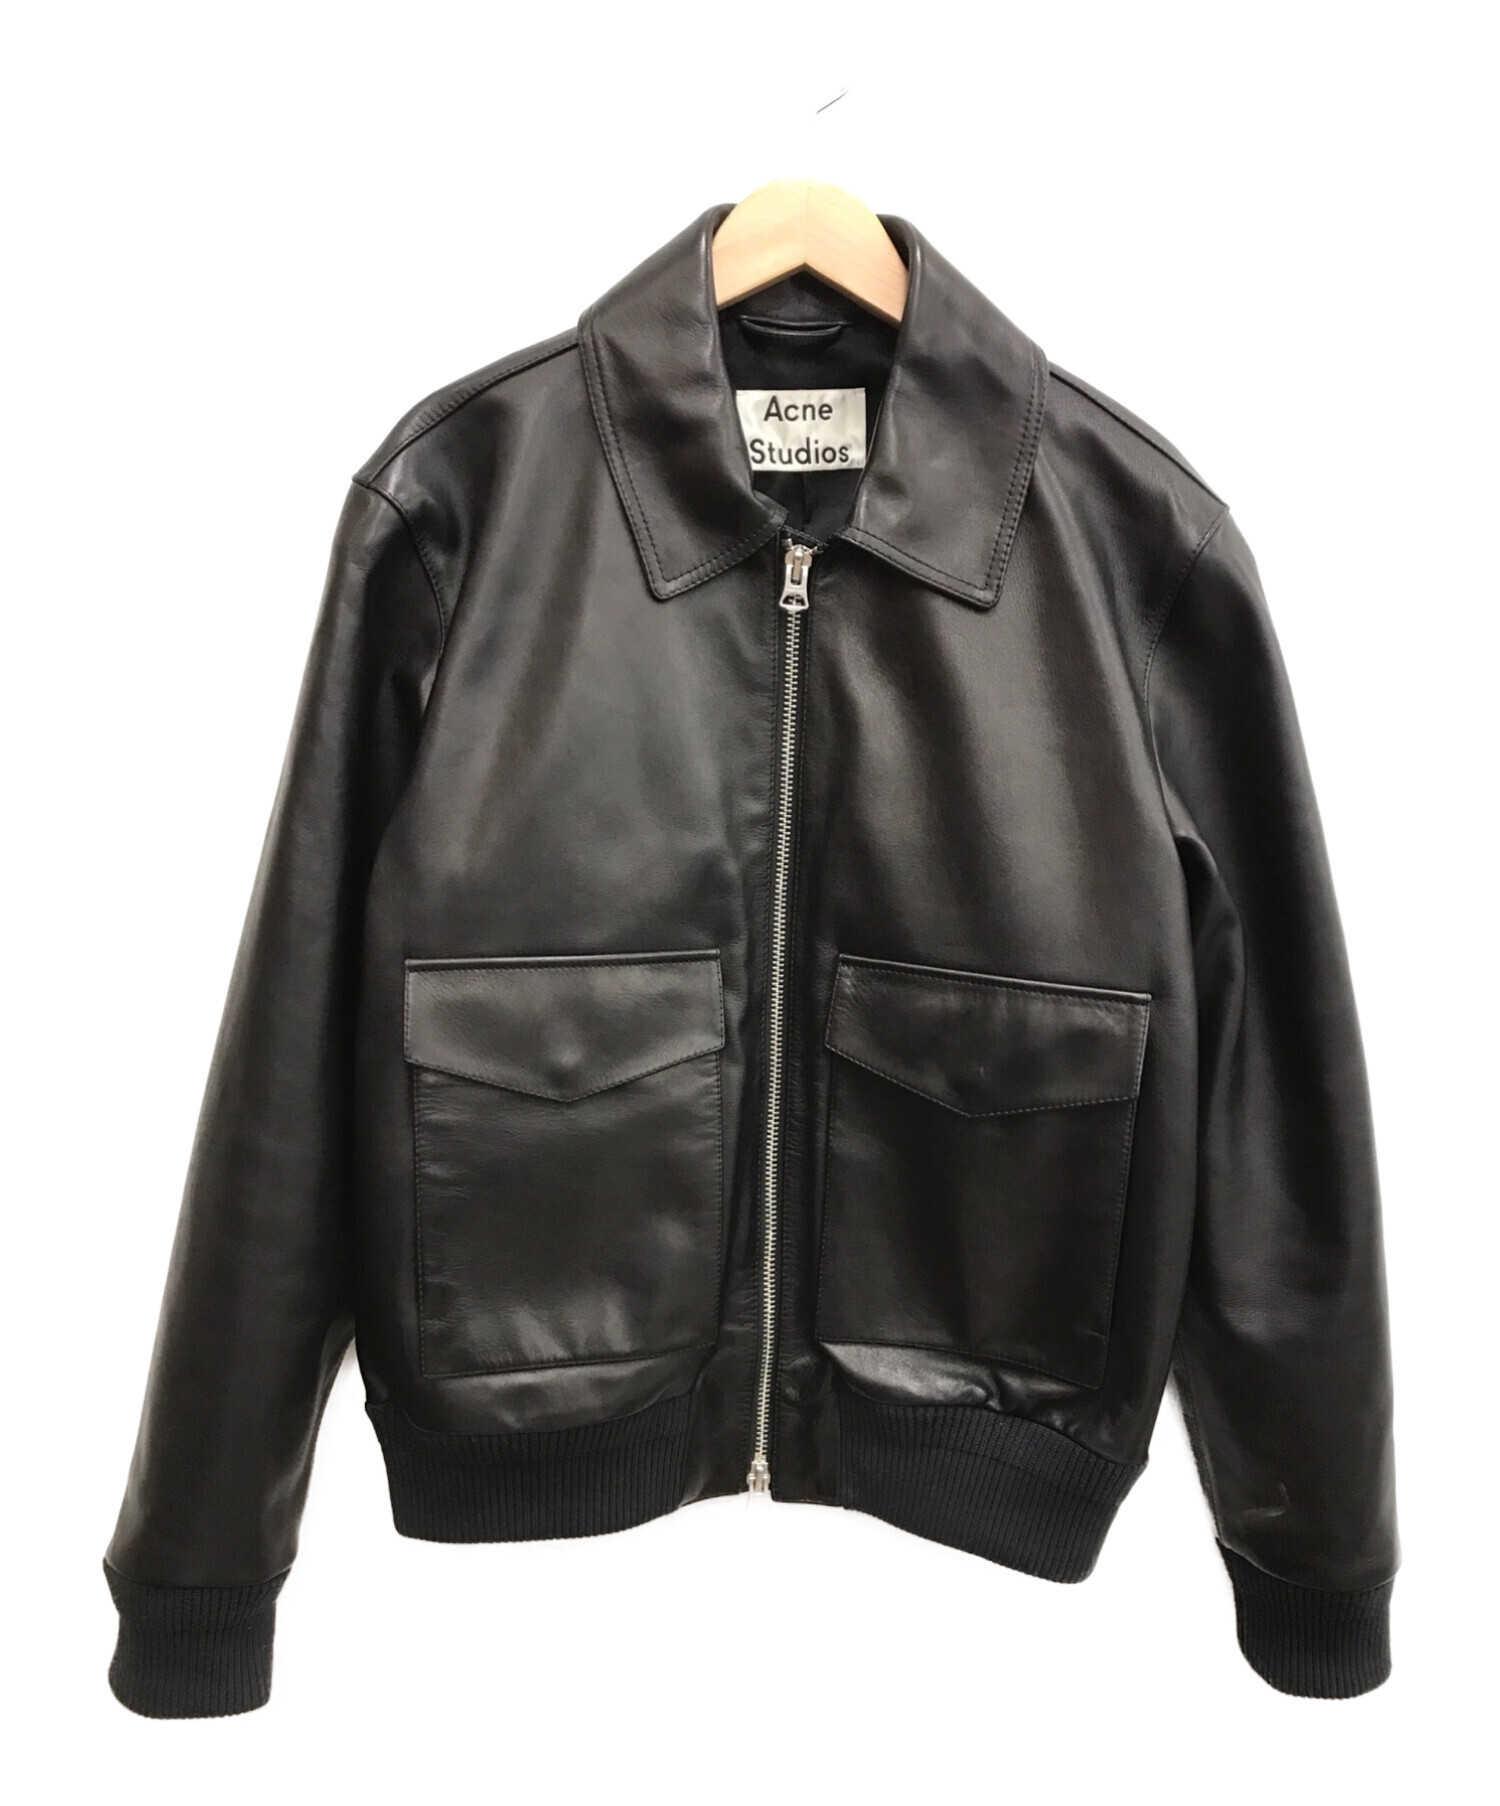 洗濯機可 Acne Studios アクネ ストゥディオズ レディース ジャケット・ブルゾン アウター Lepage Leather Jacket 